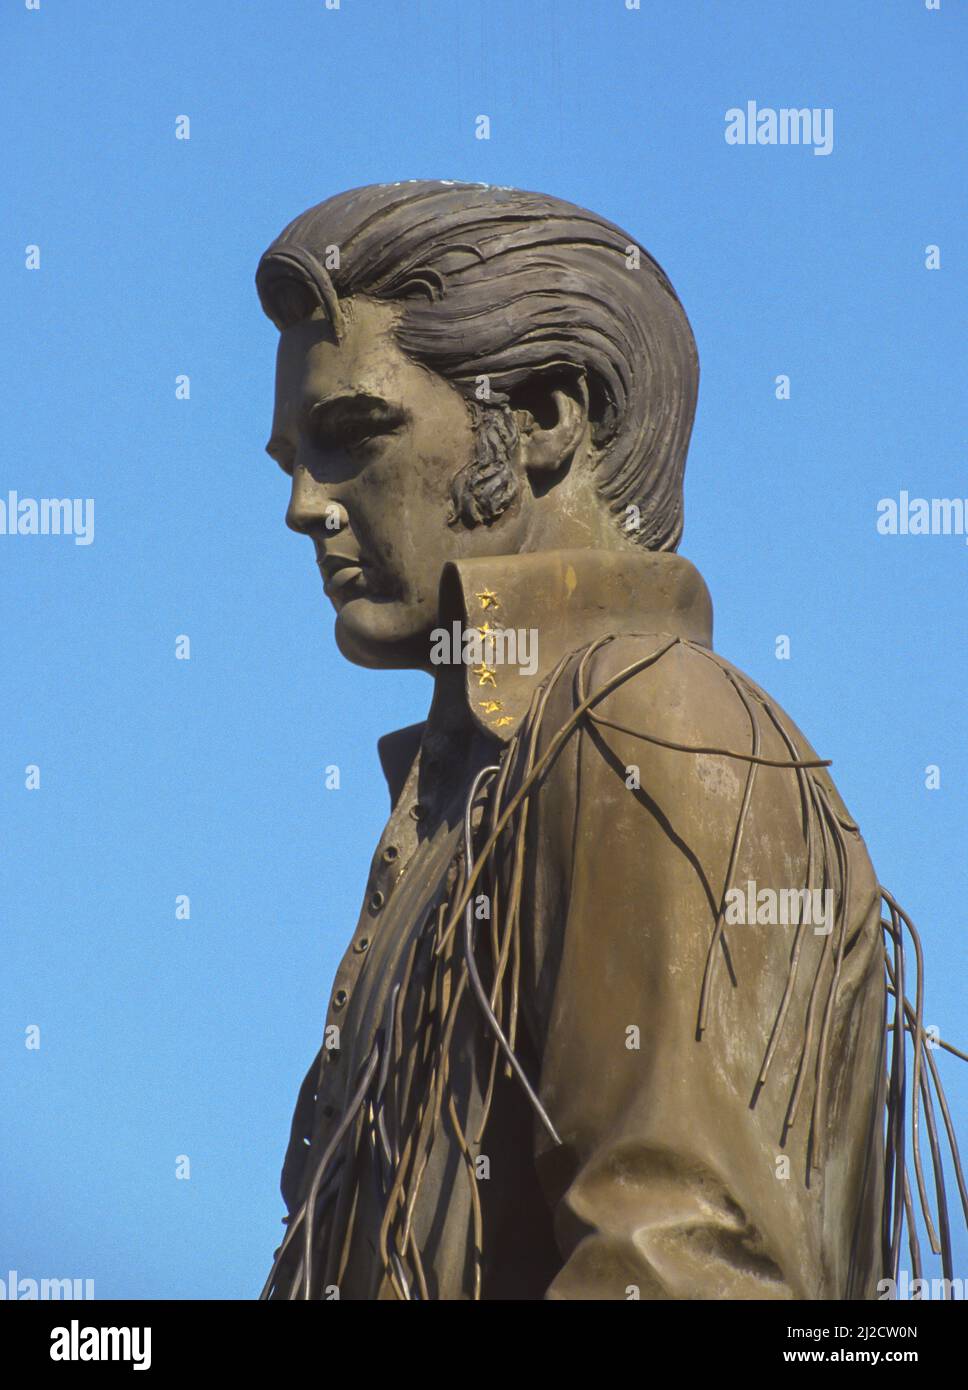 MEMPHIS, TENNESSEE, EE.UU. - Estatua del músico Elvis Presley, en la calle Beale Street. Foto de stock